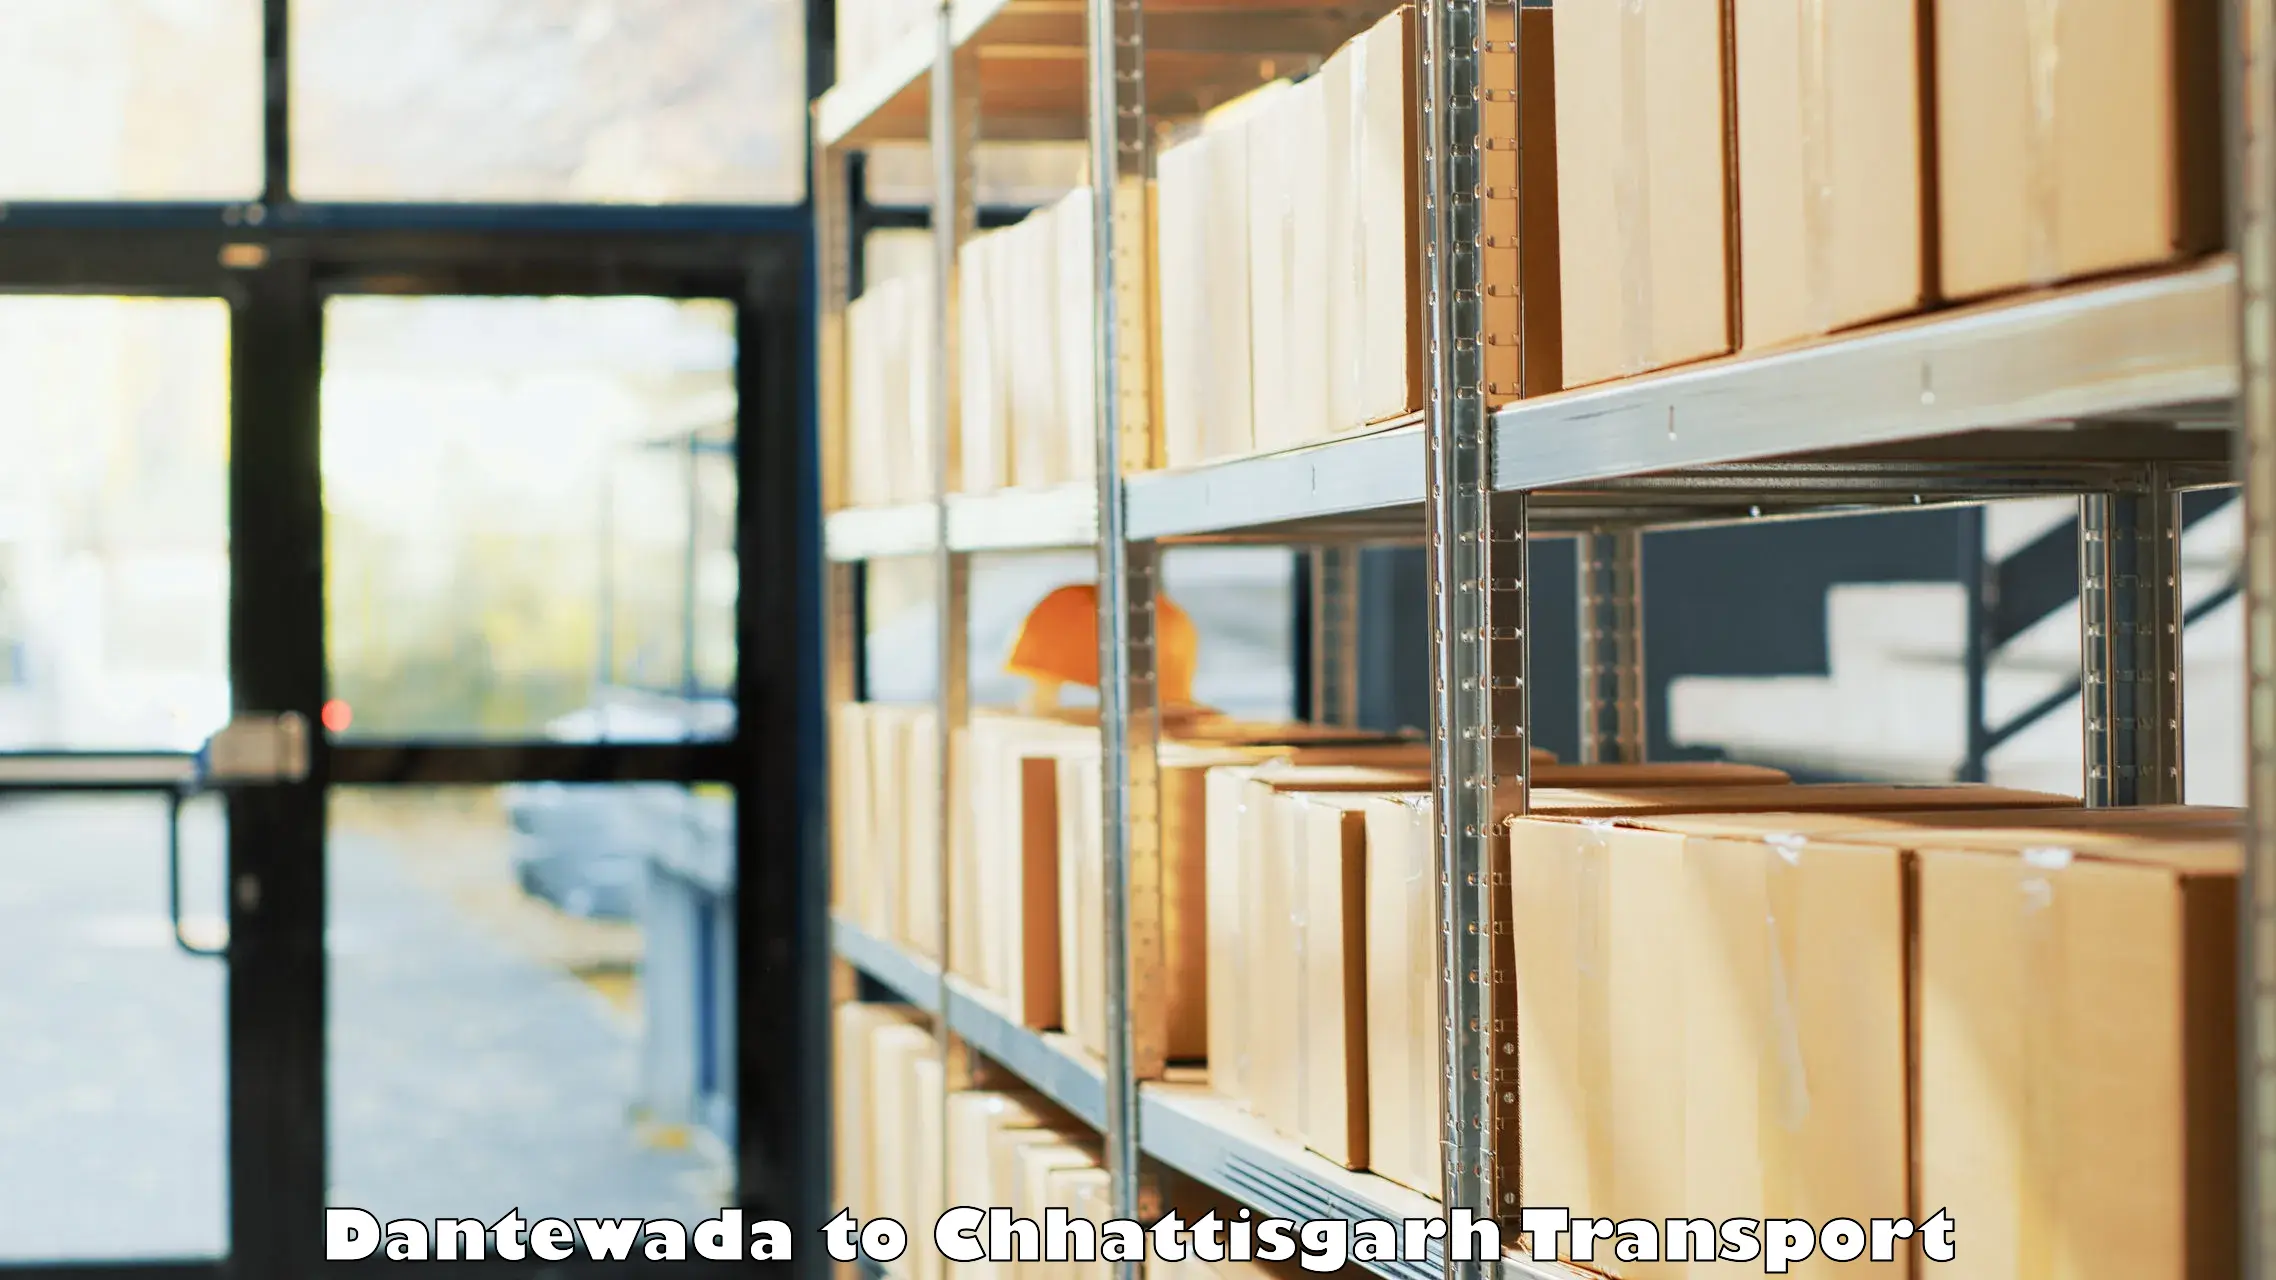 Two wheeler parcel service Dantewada to Dantewada